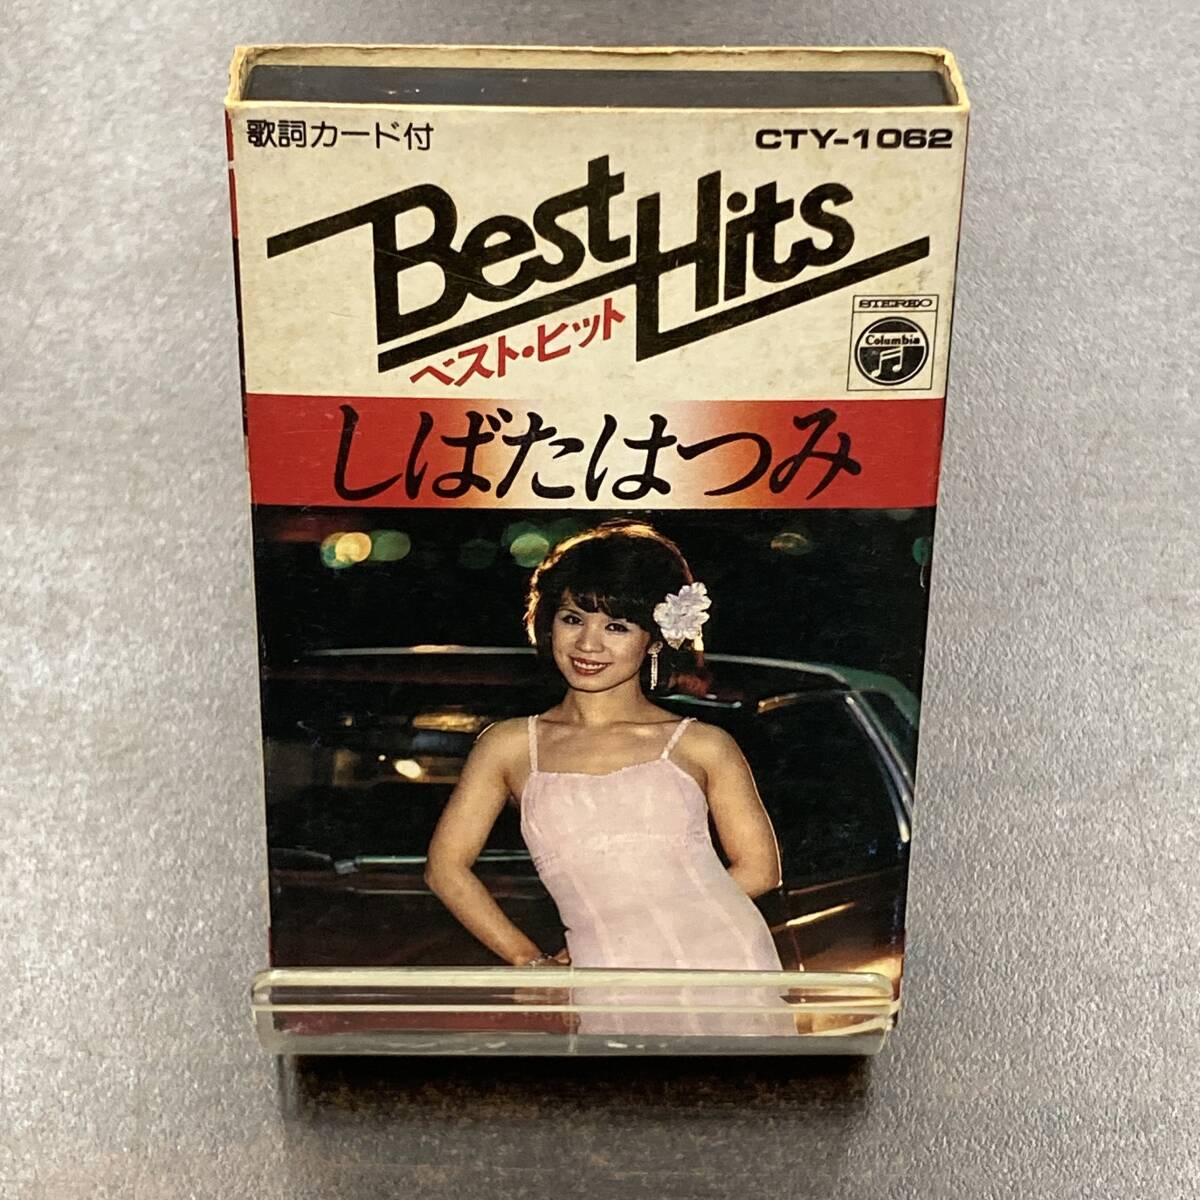 1145M しばたはつみ ベスト・ヒット カセットテープ / Hatsumi Shibata Citypop Cassette Tapeの画像1